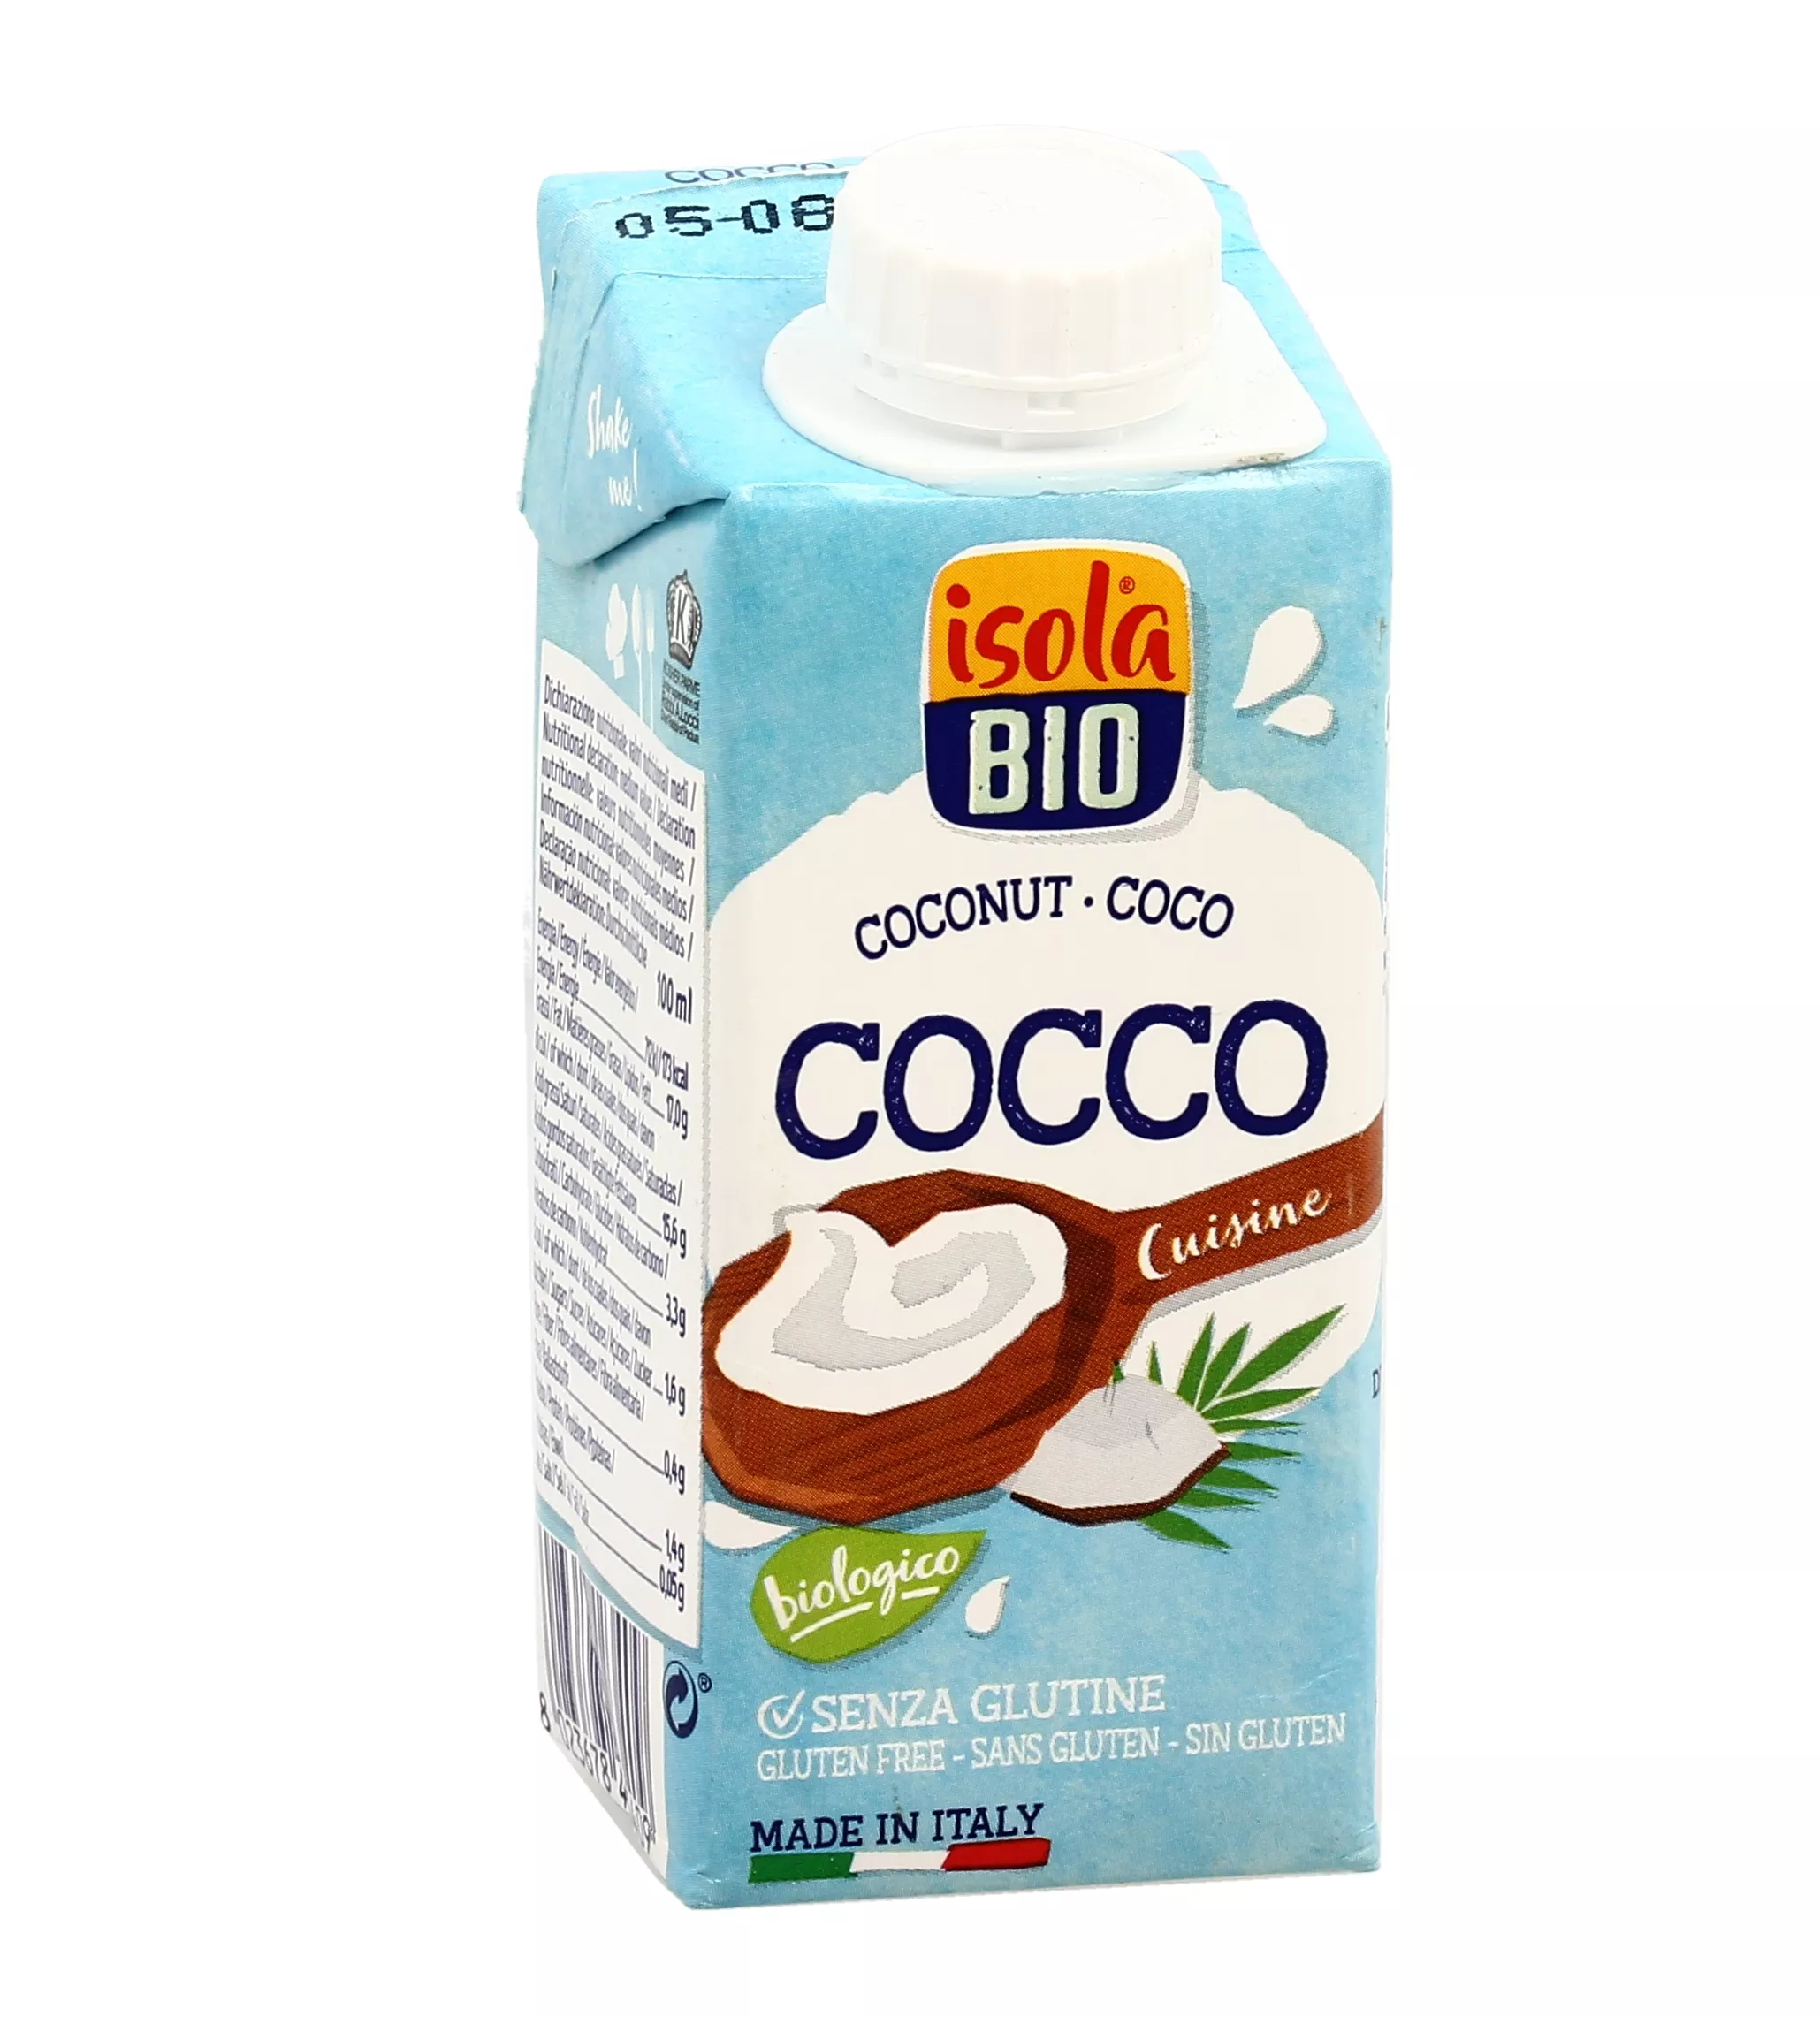 Cuisine Cocco - Panna Vegetale con Latte di Cocco - Isola Bio